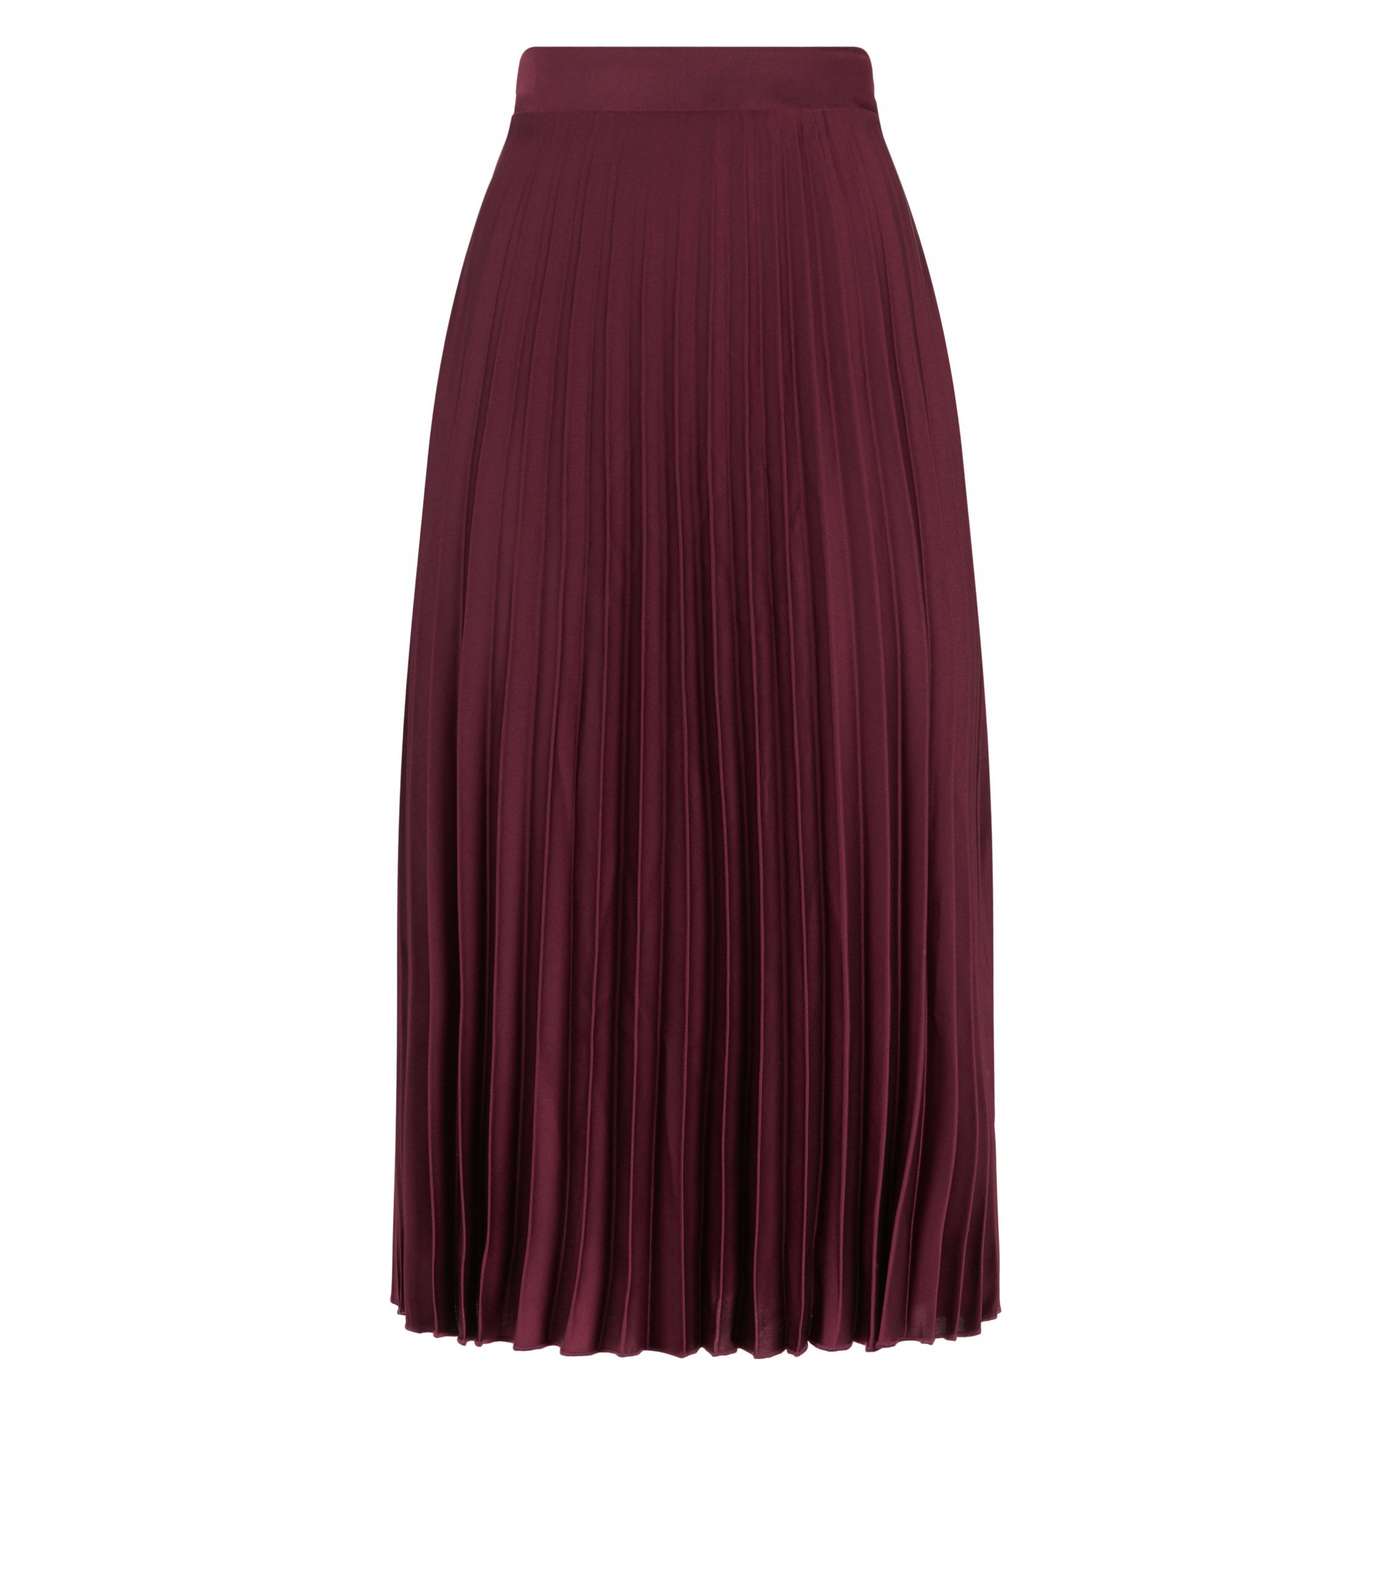 Petite Burgundy Satin Pleated Midi Skirt Image 4